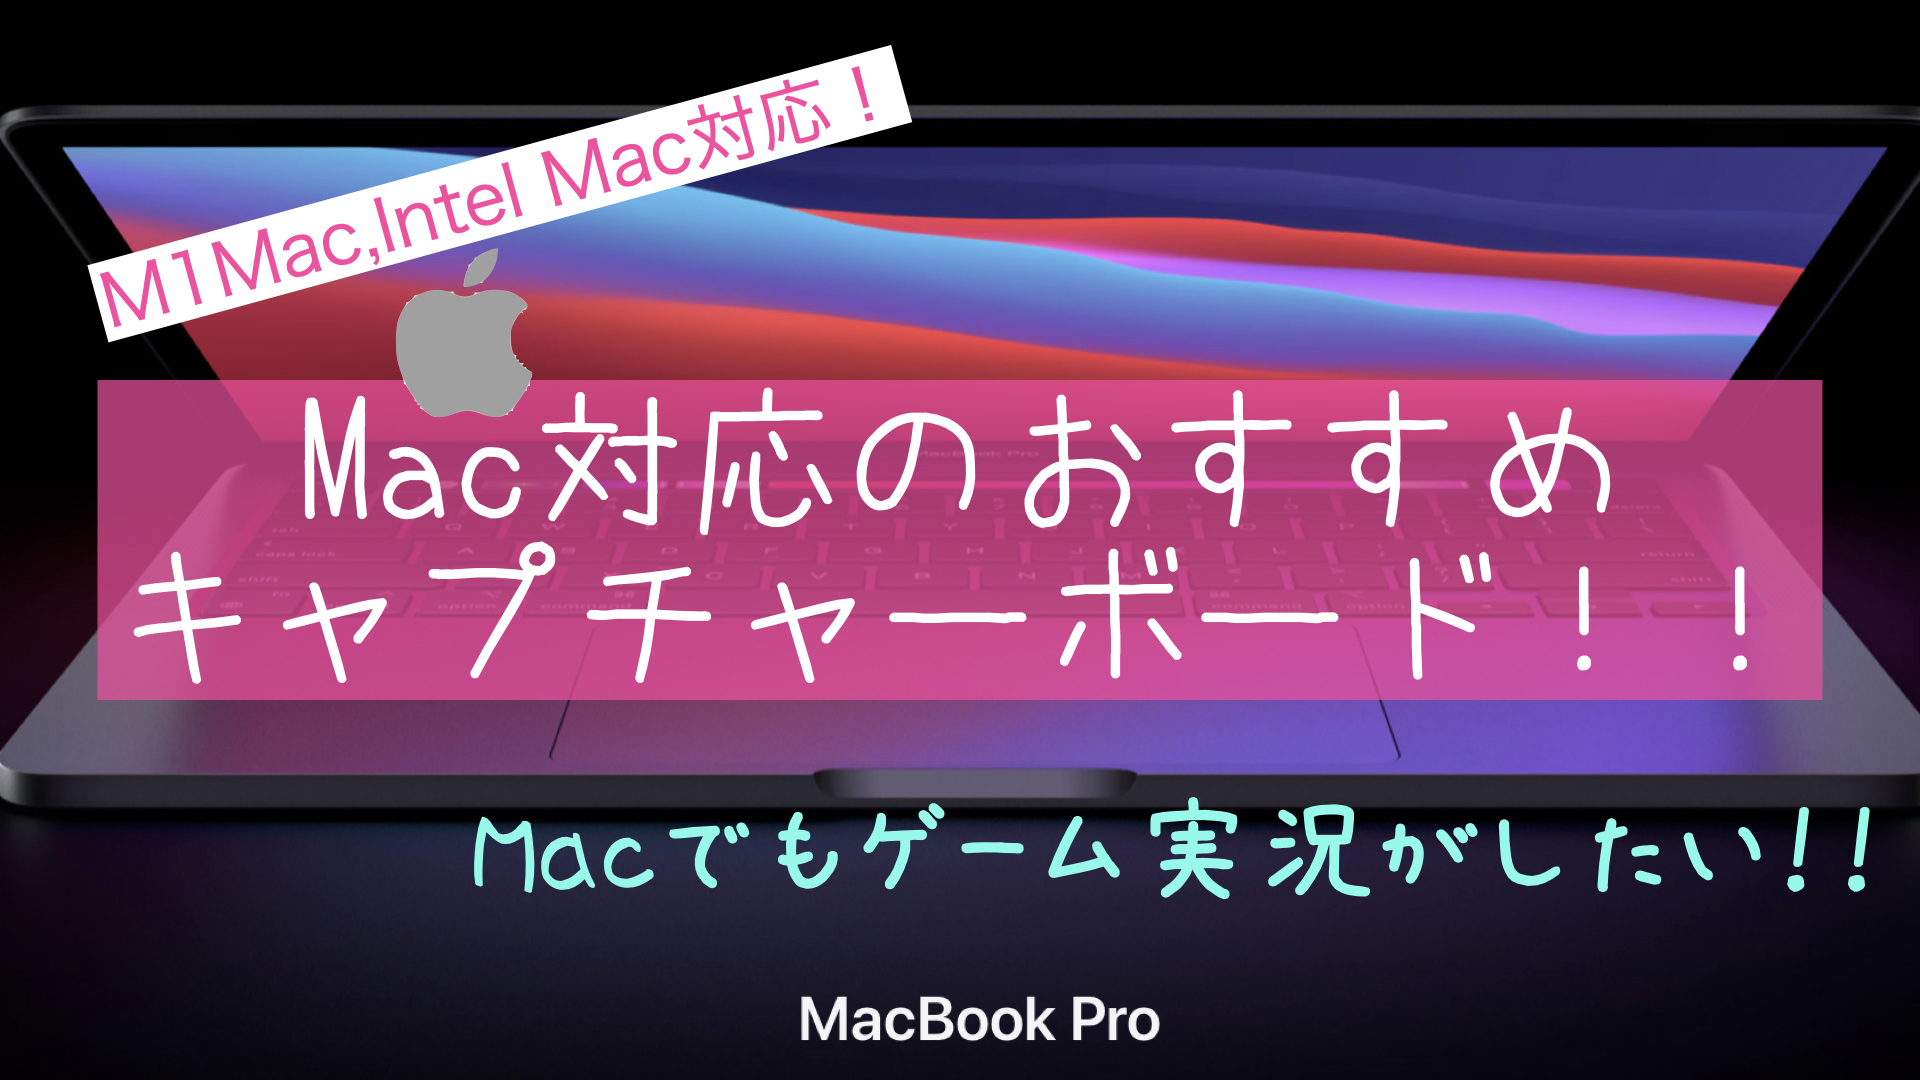 Macでもゲーム実況 配信がしたい Mac対応のキャプチャーボード紹介 M1 M2 Mac Apple Silicon 対応 Switch Playstation しおビル